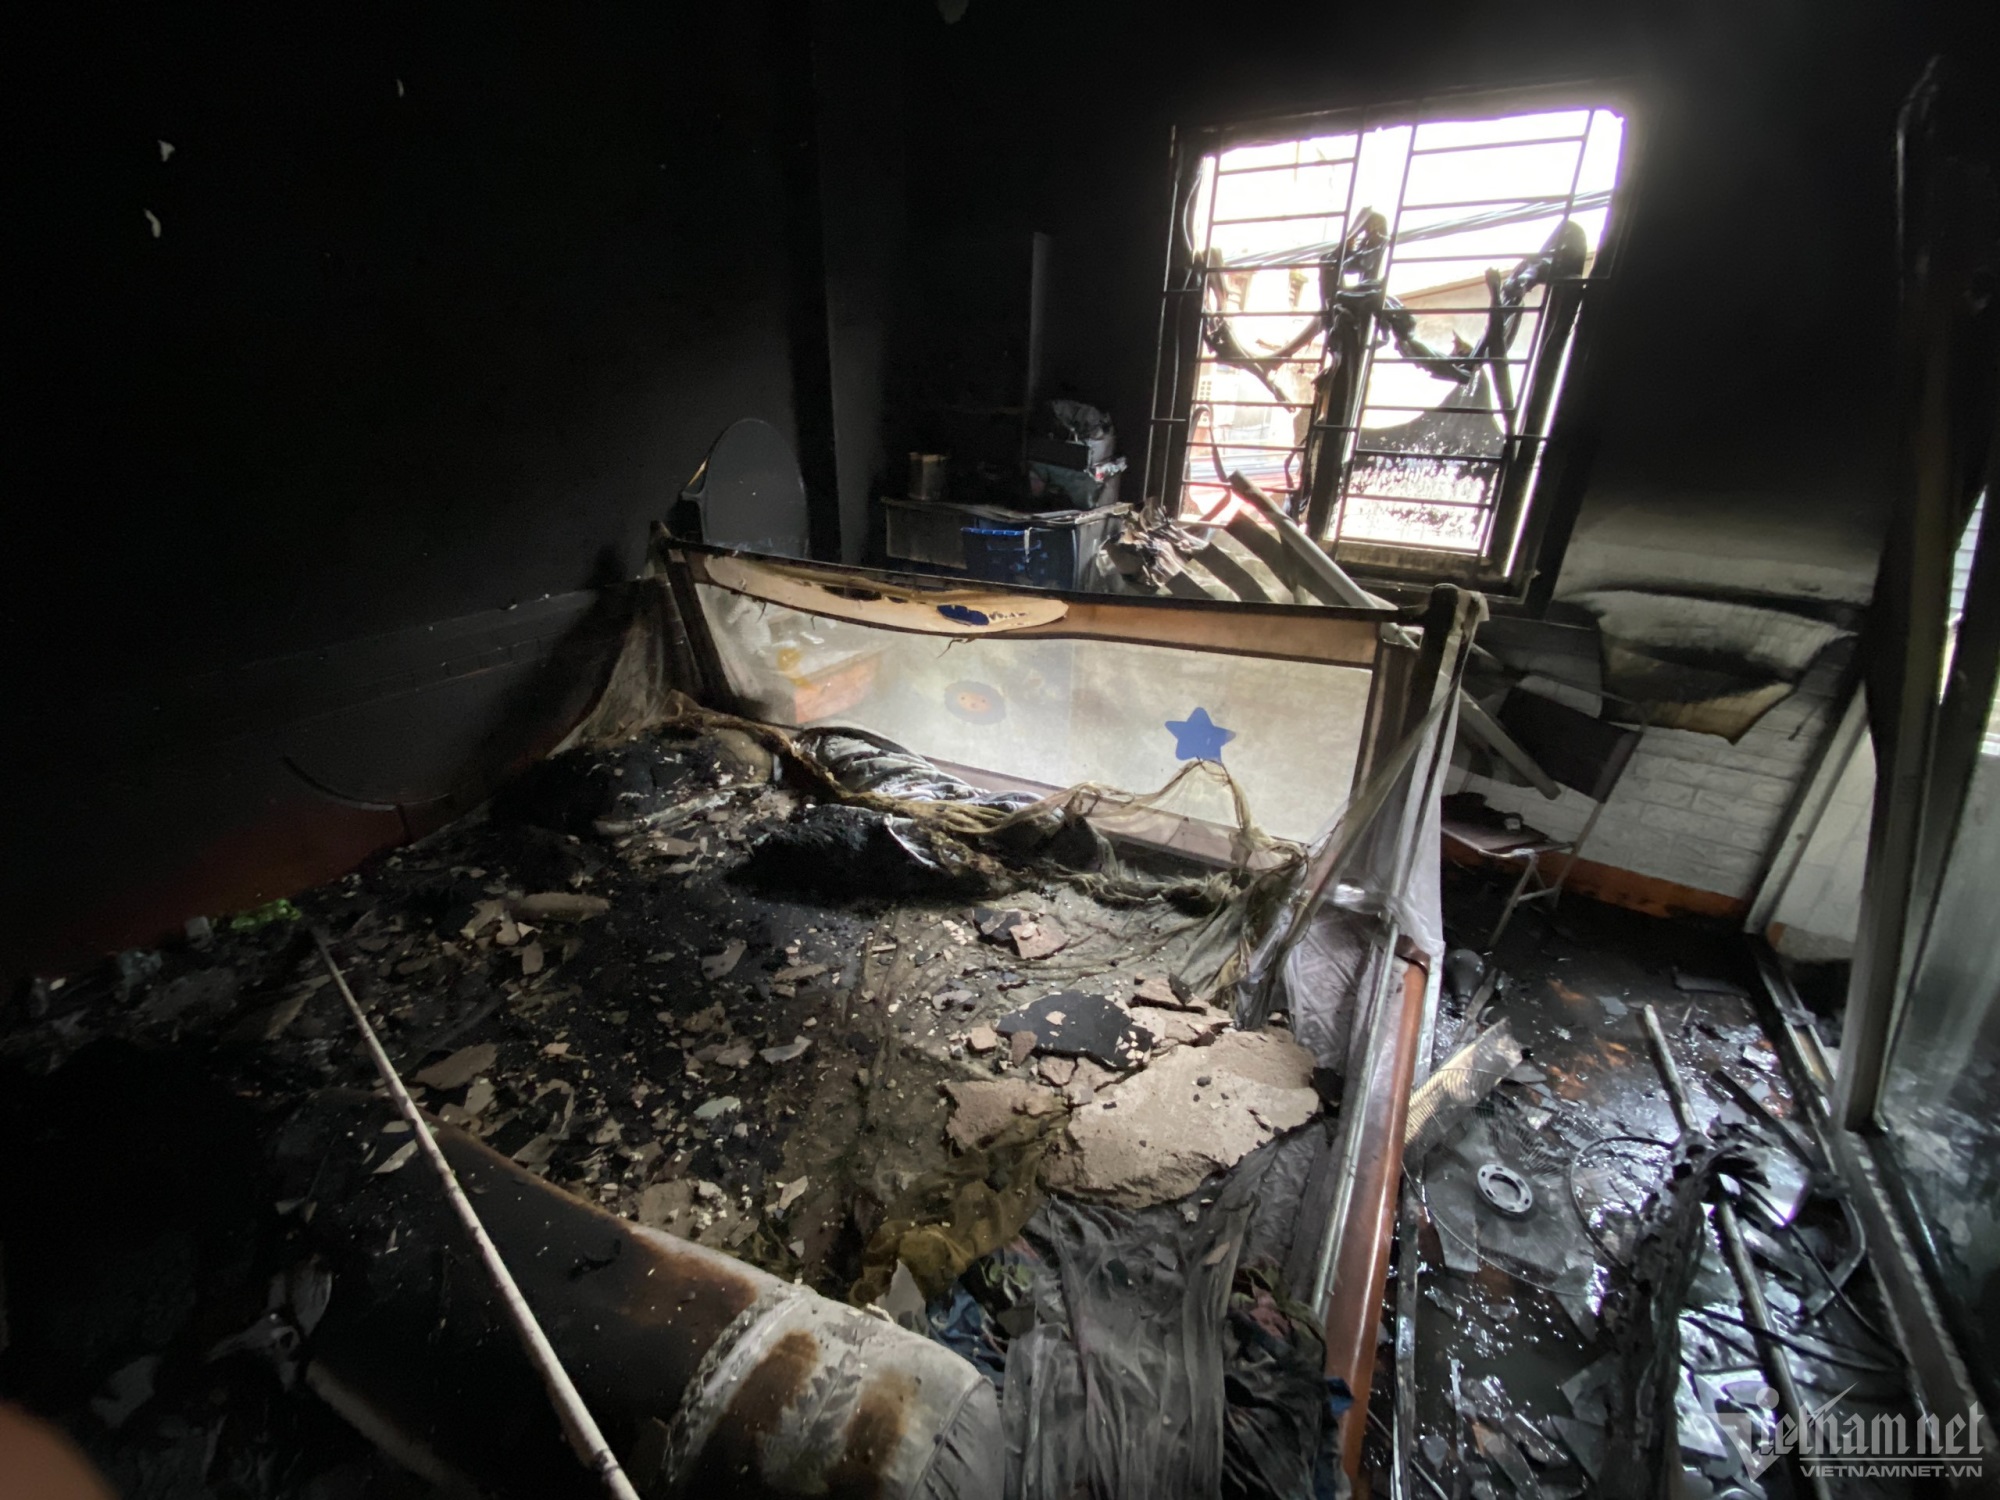 Khung cảnh tan hoang sau vụ hỏa hoạn chung cư mini ở Hà Nội: Nhiều phương tiện cháy trơ khung, đồ vật chỉ còn là đống tro - Ảnh 5